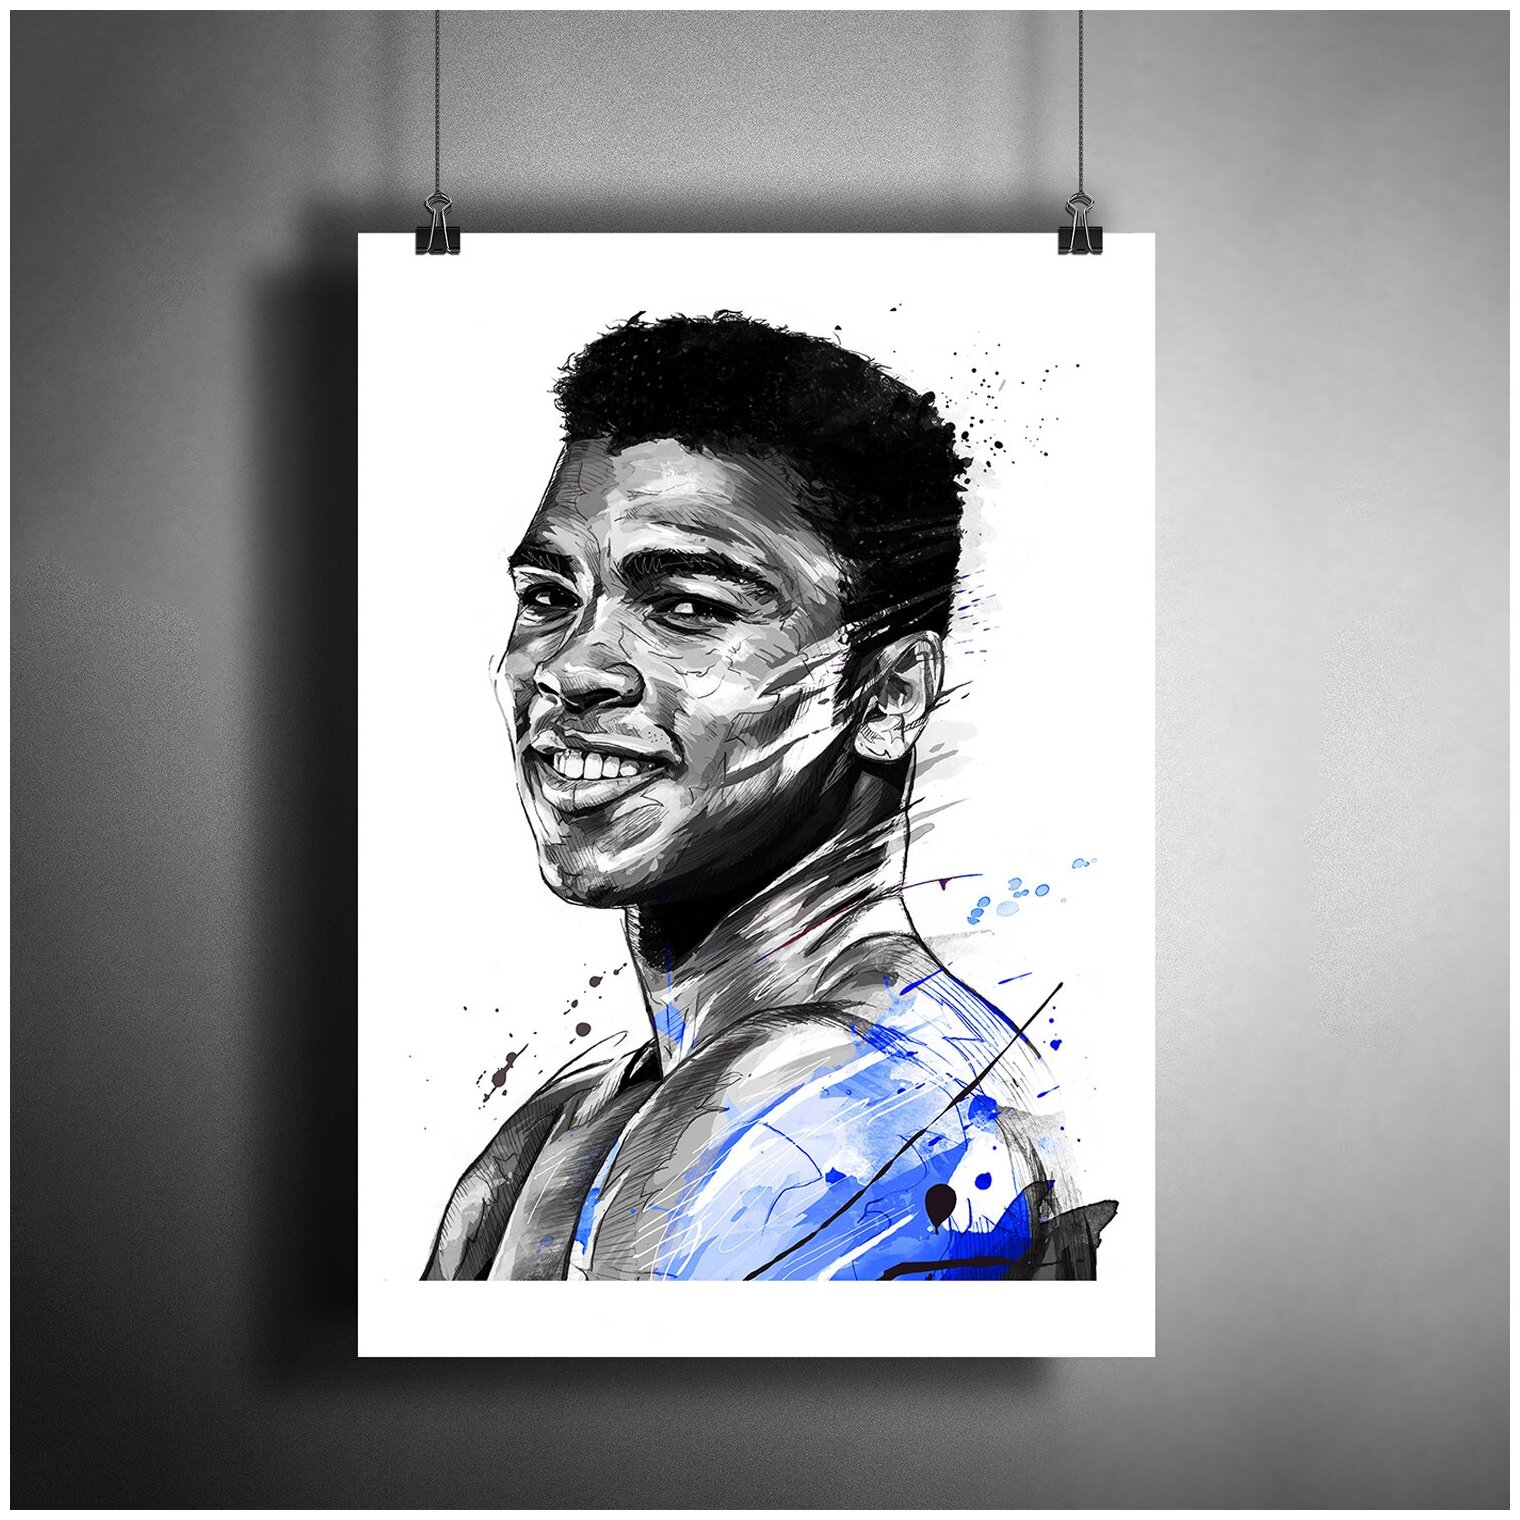 Постер плакат для интерьера "Американский боксер Мухаммед Али. Чемпион Олимпийских игр Muhammad Ali"/ Декор дома, офиса. A3 (297 x 420 мм)